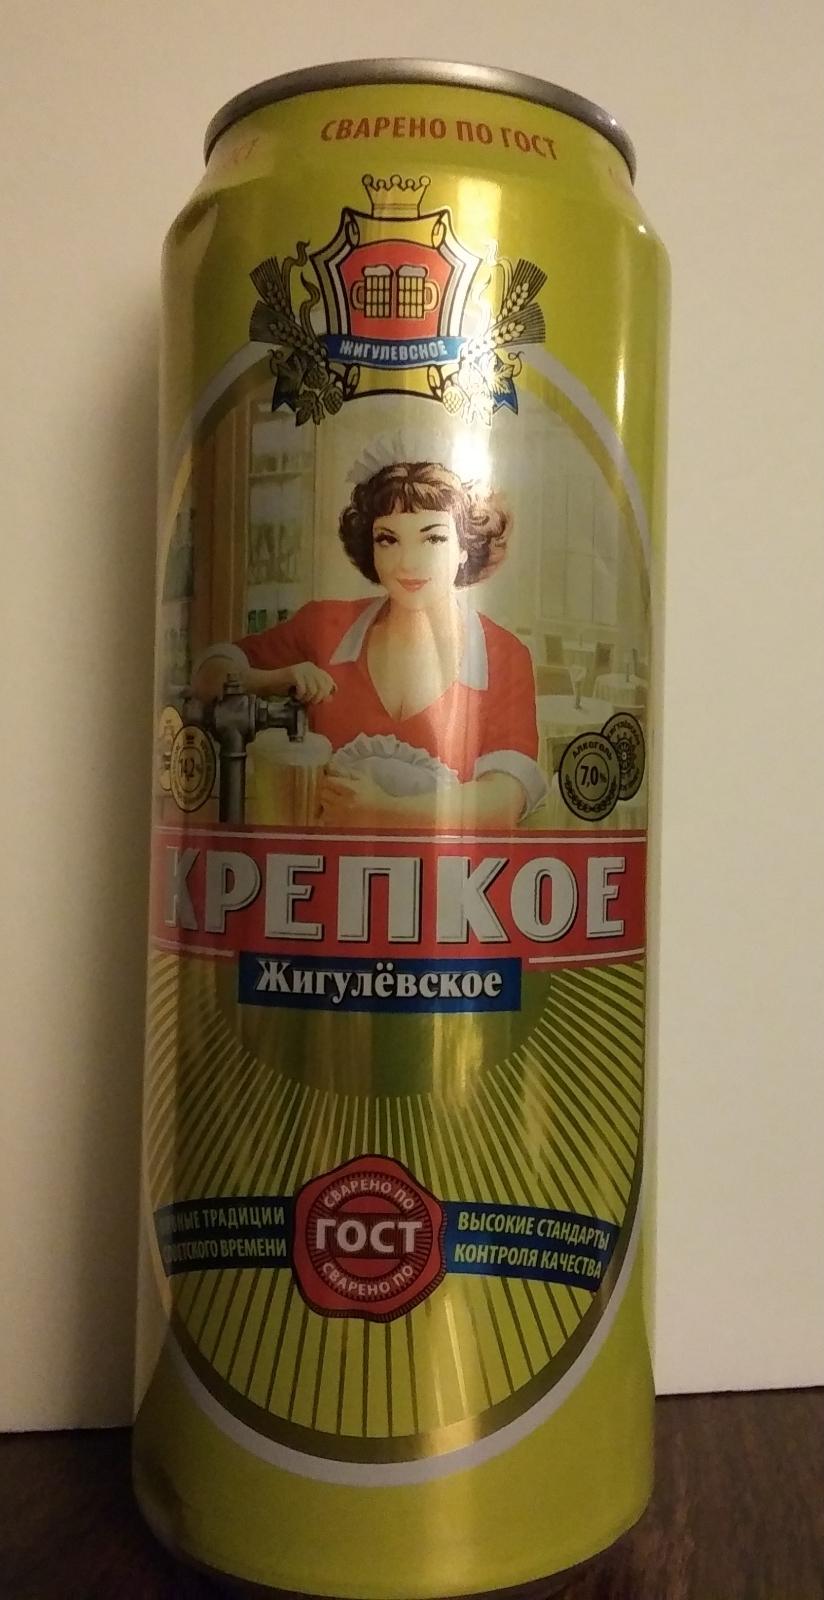 Zhigulevskoye Krepkoye (Strong)